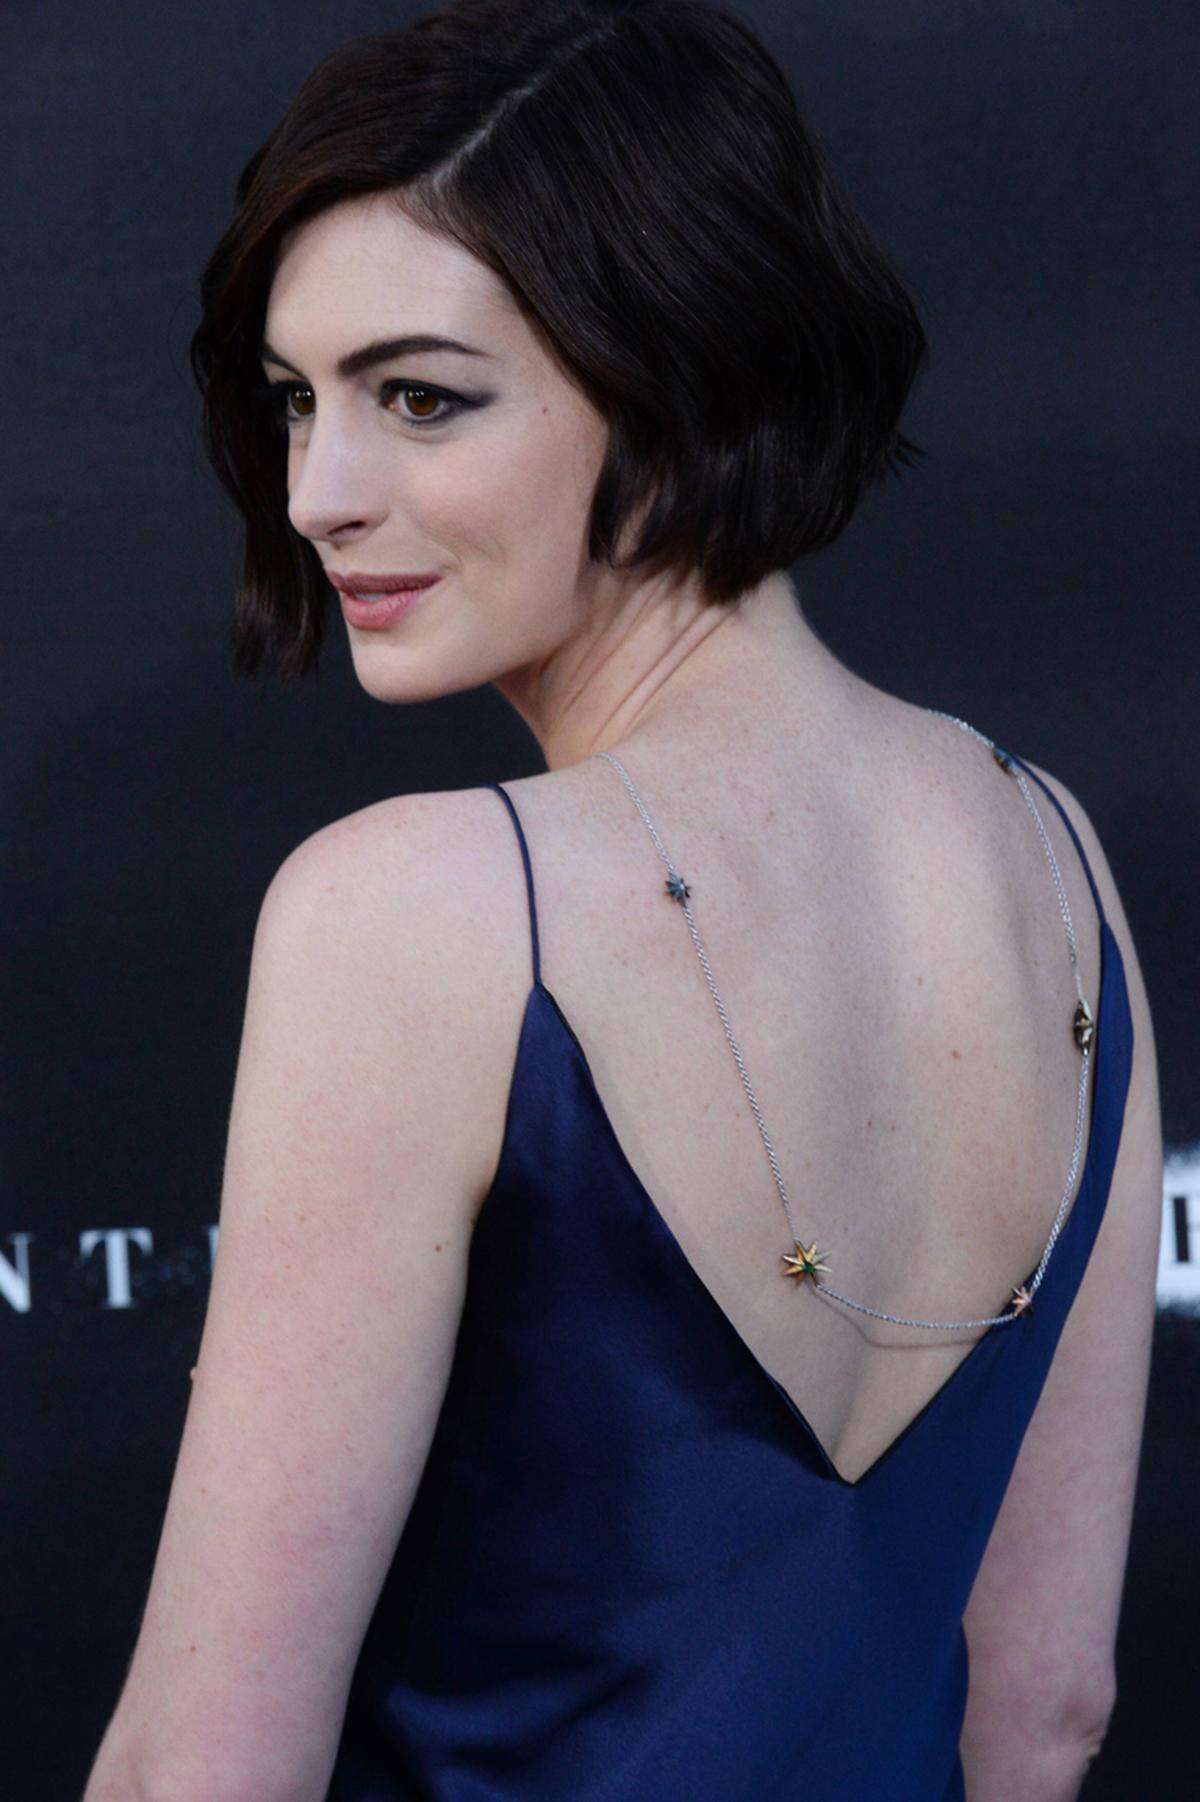 Ein schöner Rücken kann entzücken. Ganz besonders in Szene setzte ihn jetzt Anne Hathaway bei der Premiere ihres neuen Filmes "Interstellar" mit einer Halskette, die sie verkehrt herum trug.